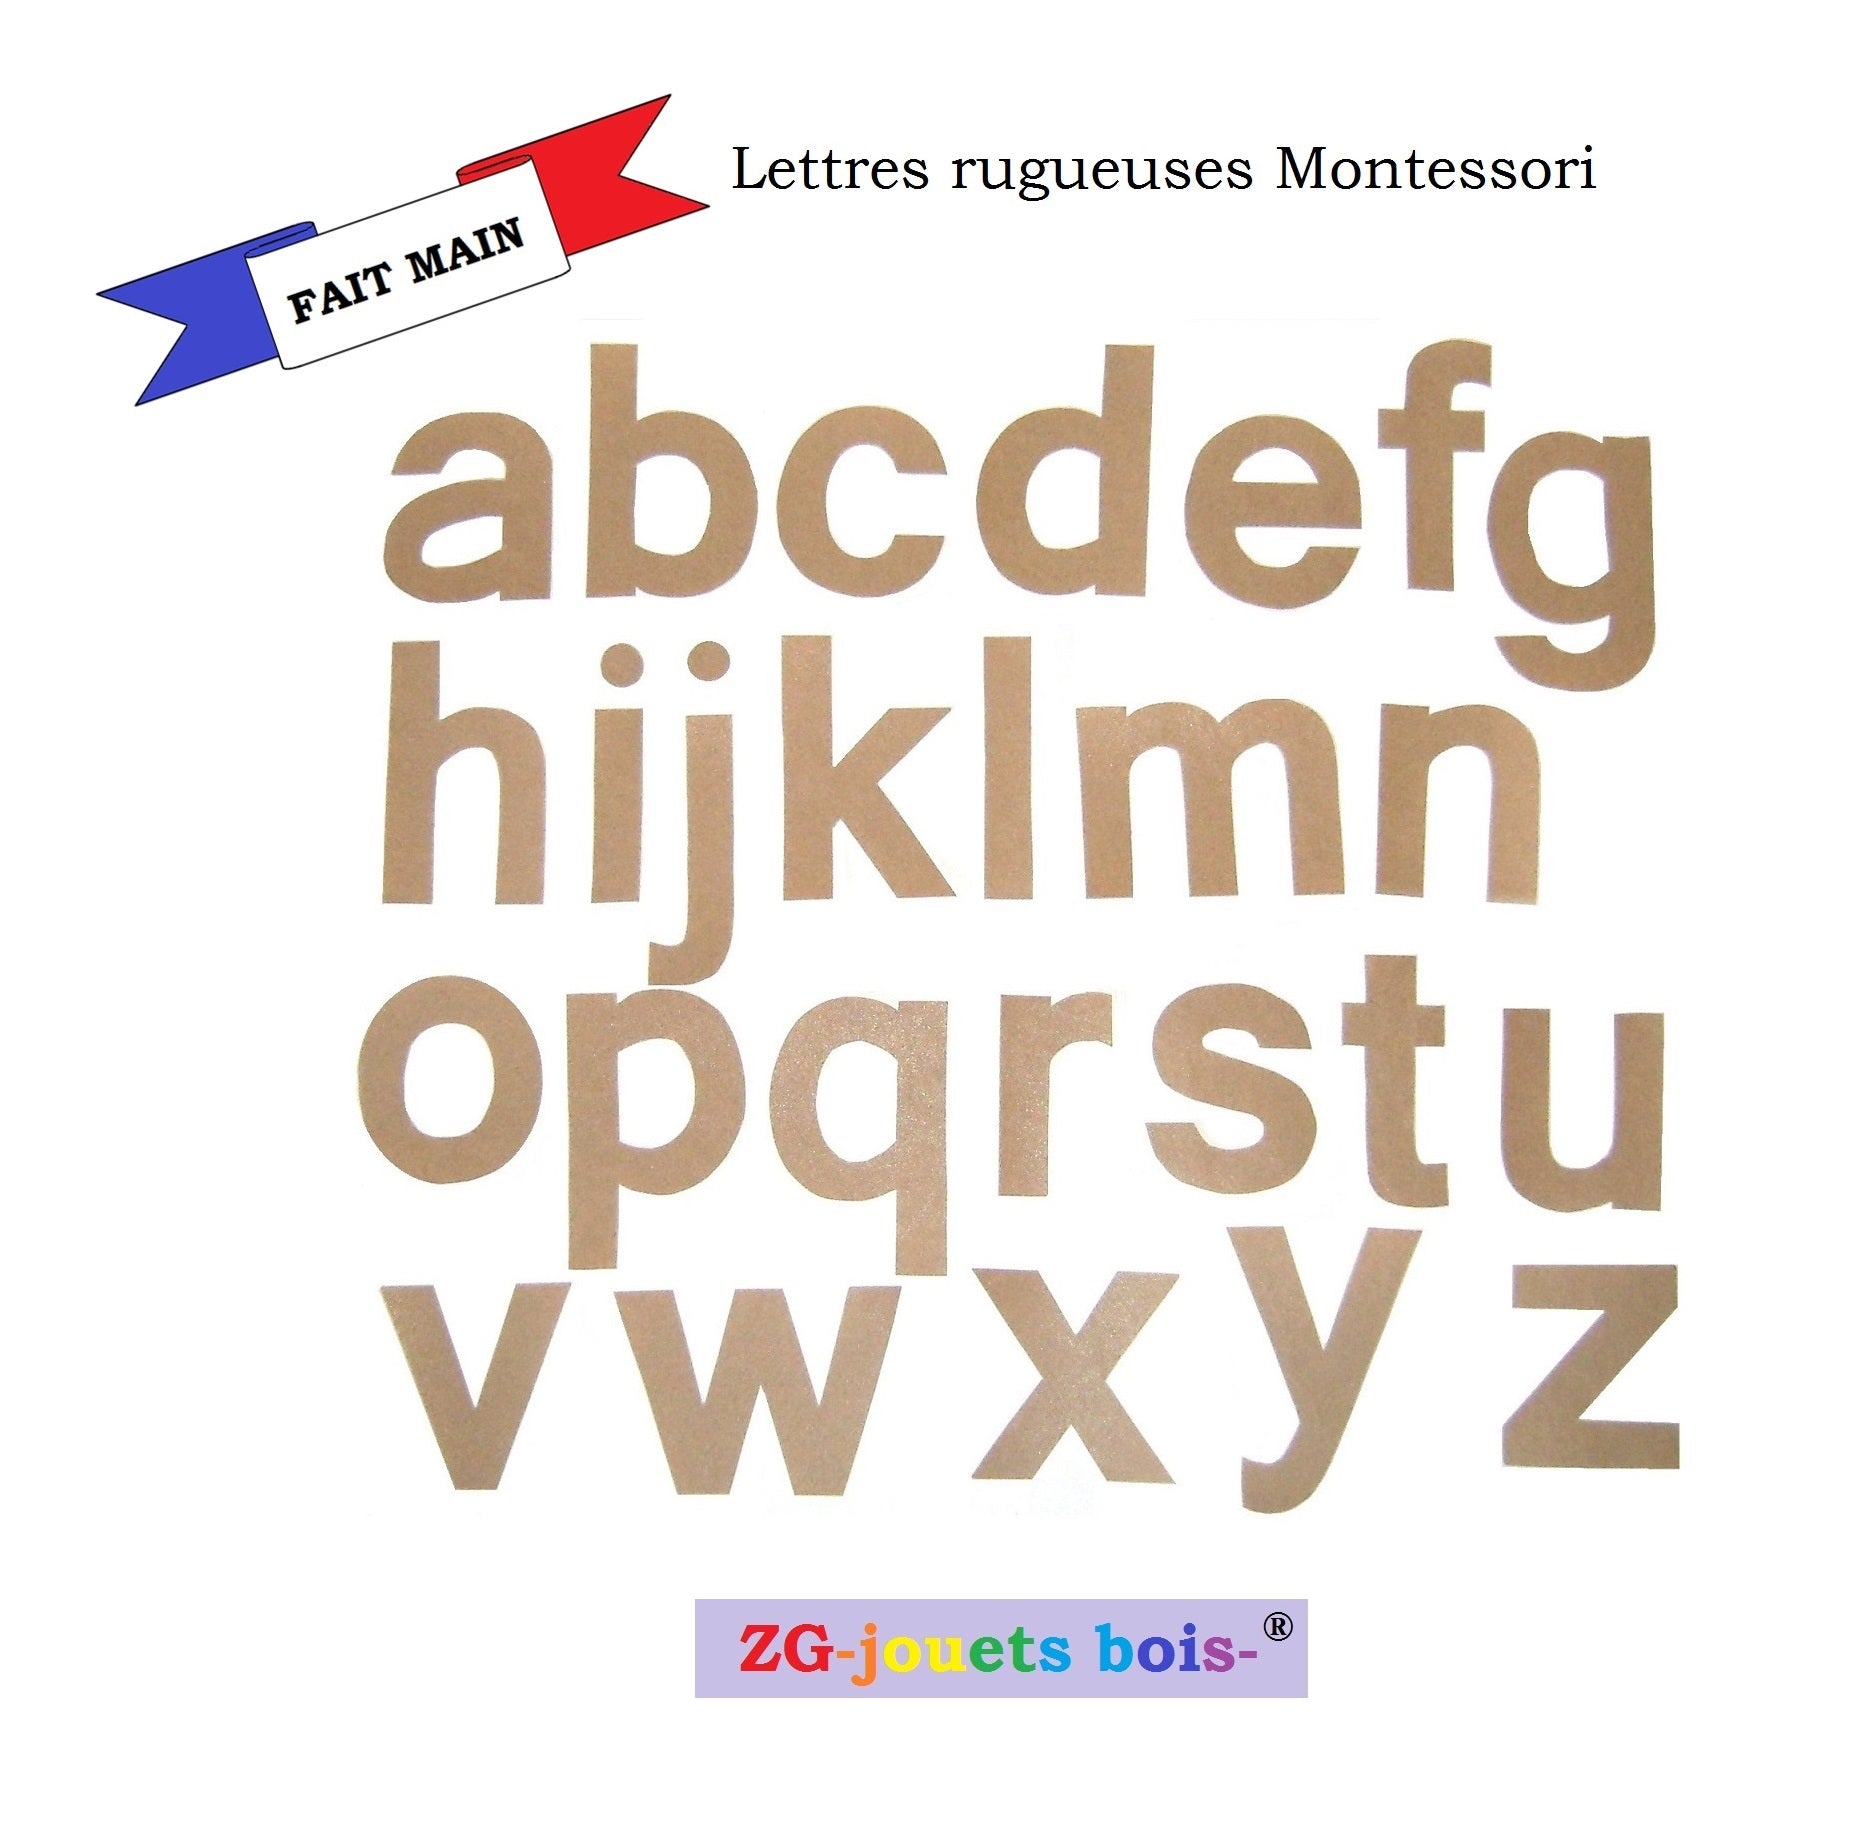 lettres rugueuses montessori imprimerie minuscules découpées à la main par ZG-jouetsbois-